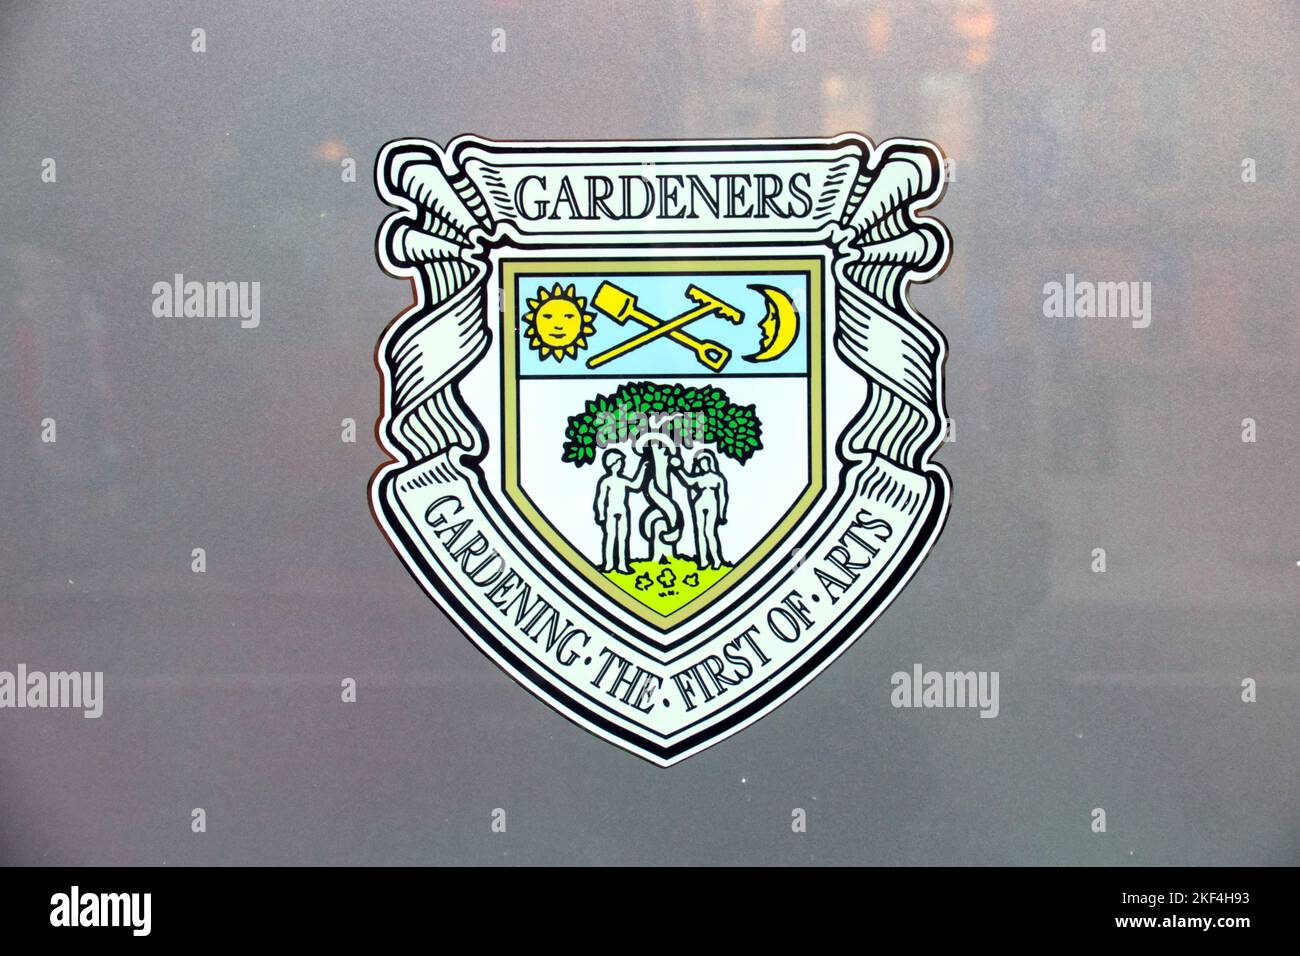 Trades Hall Glasgow Nahaufnahme des Wappens für Gärtner von Handelsgilden Stockfoto